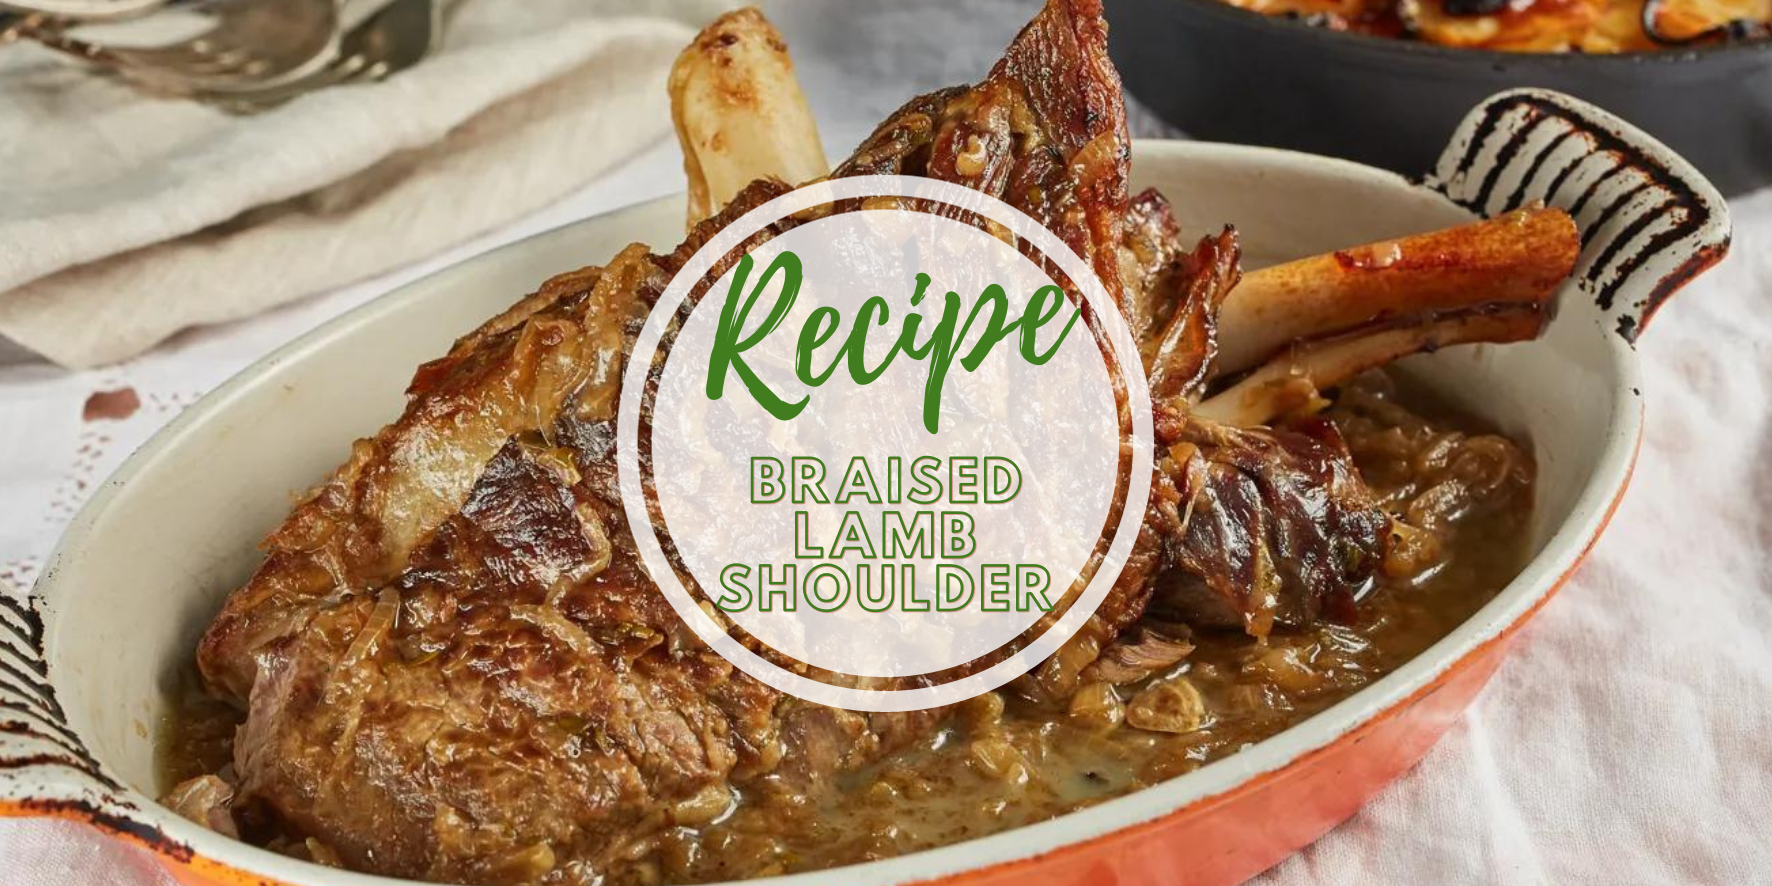 Braised Lamb Shoulder Recipe